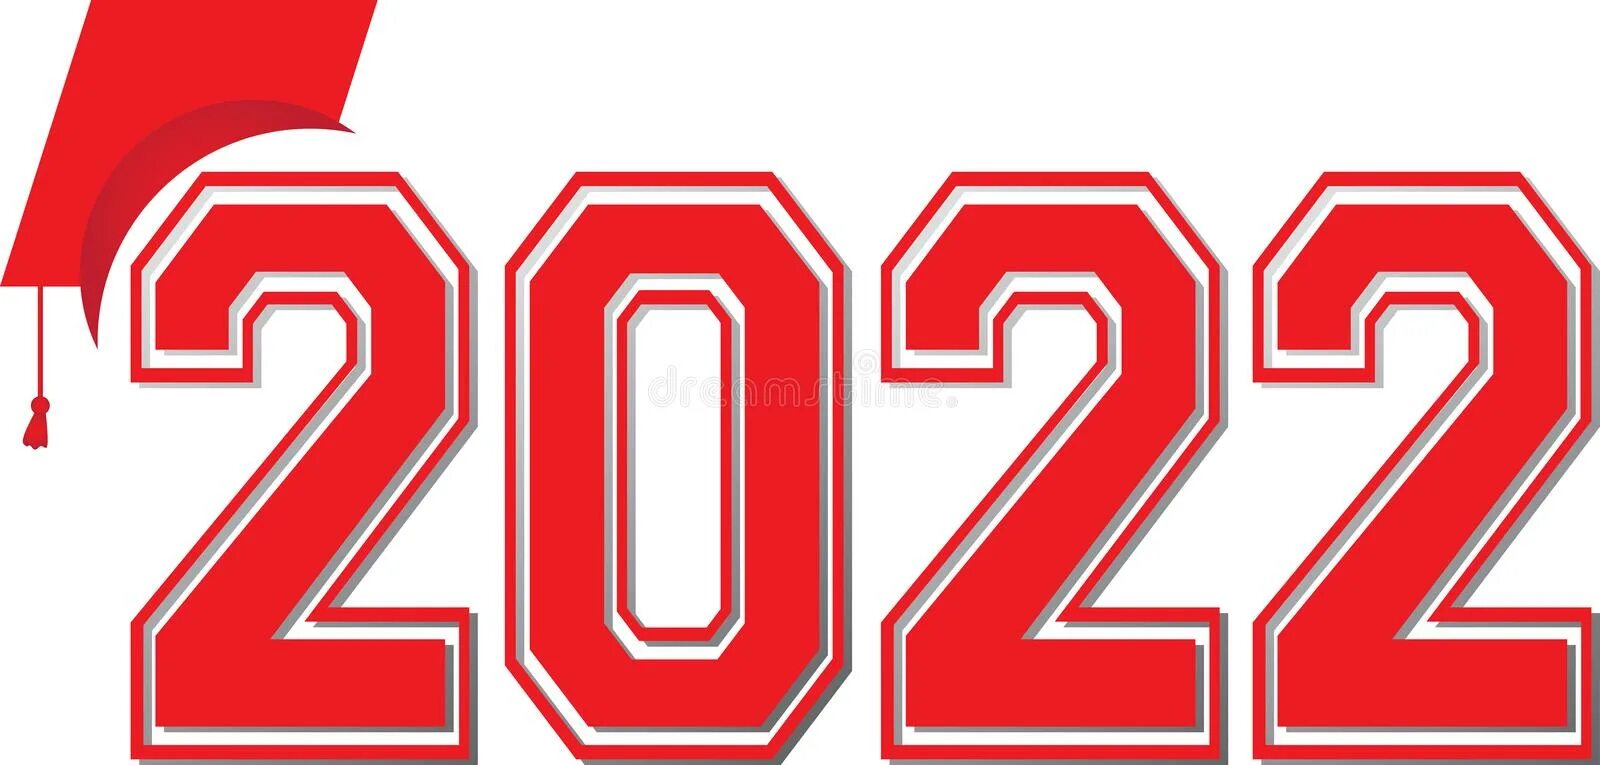 Логотипы 2022. 2022 Надпись синяя. 2022 Синие цифры. Текстовый логотип 2022. Тайтл 2022